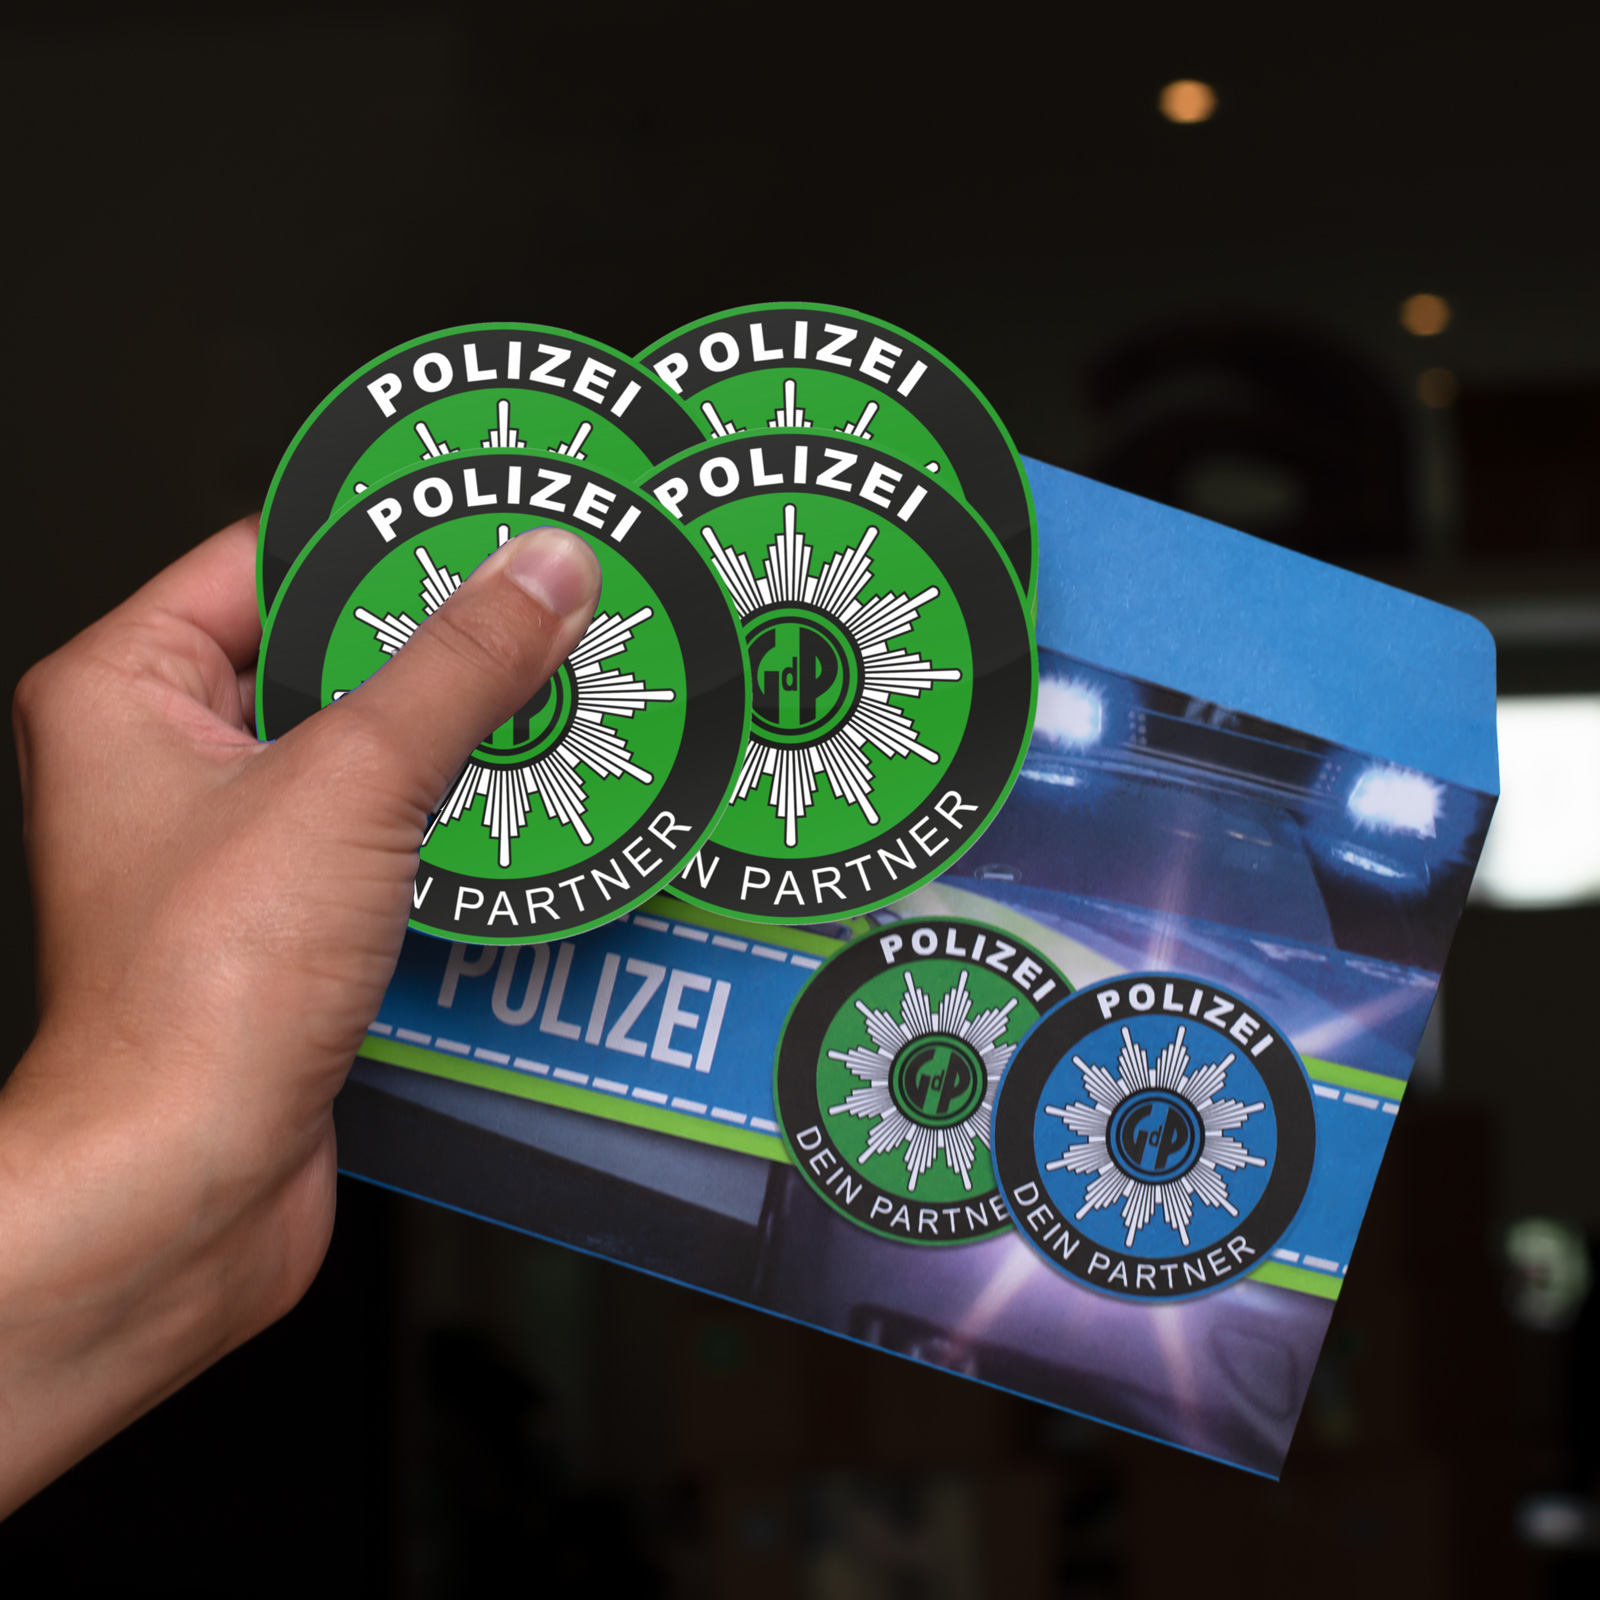 Polizei GDP Aufkleber 4er Set Knöllchenstop Gewerkschaft Sticker